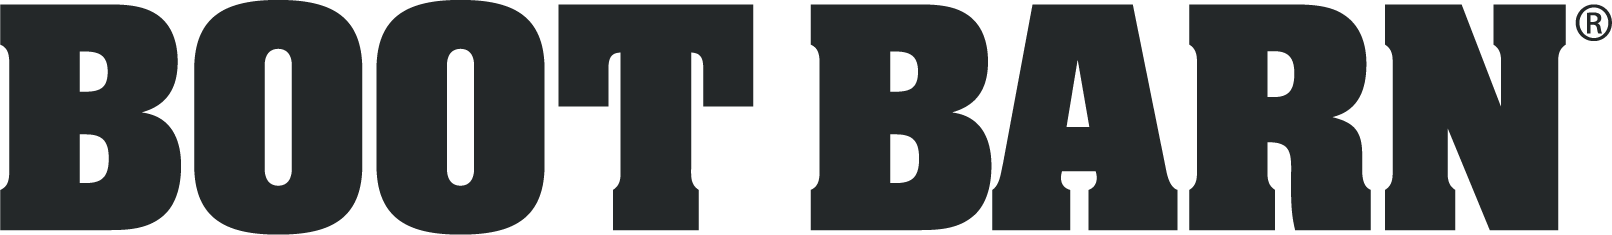 Boot Barn Logo